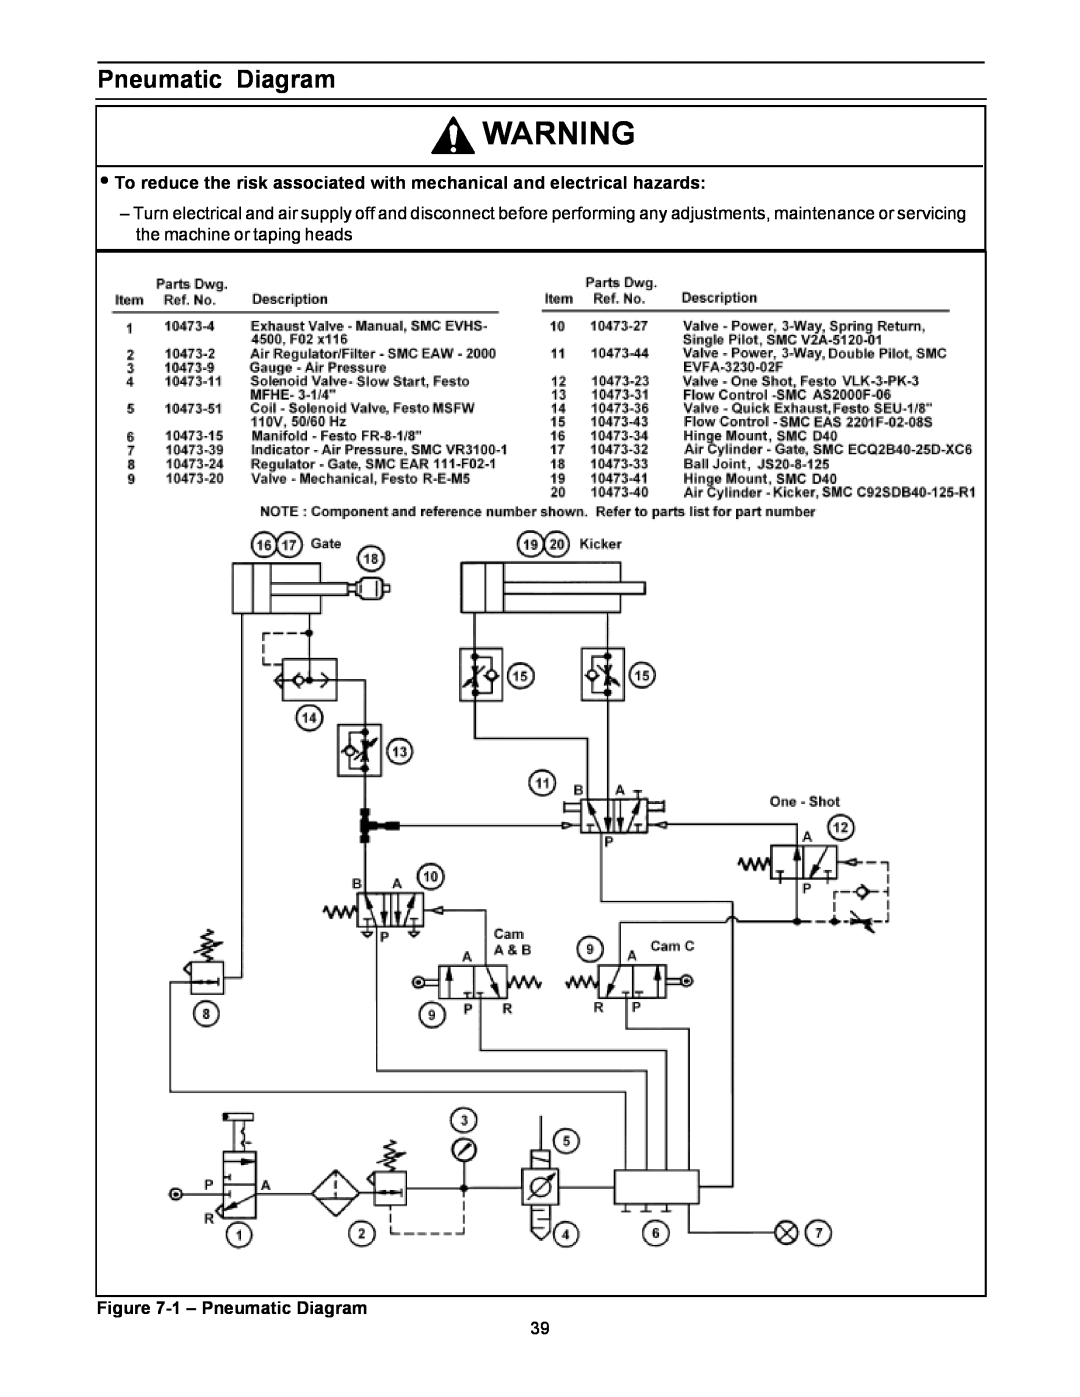 3M 800af-s manual 1– Pneumatic Diagram 